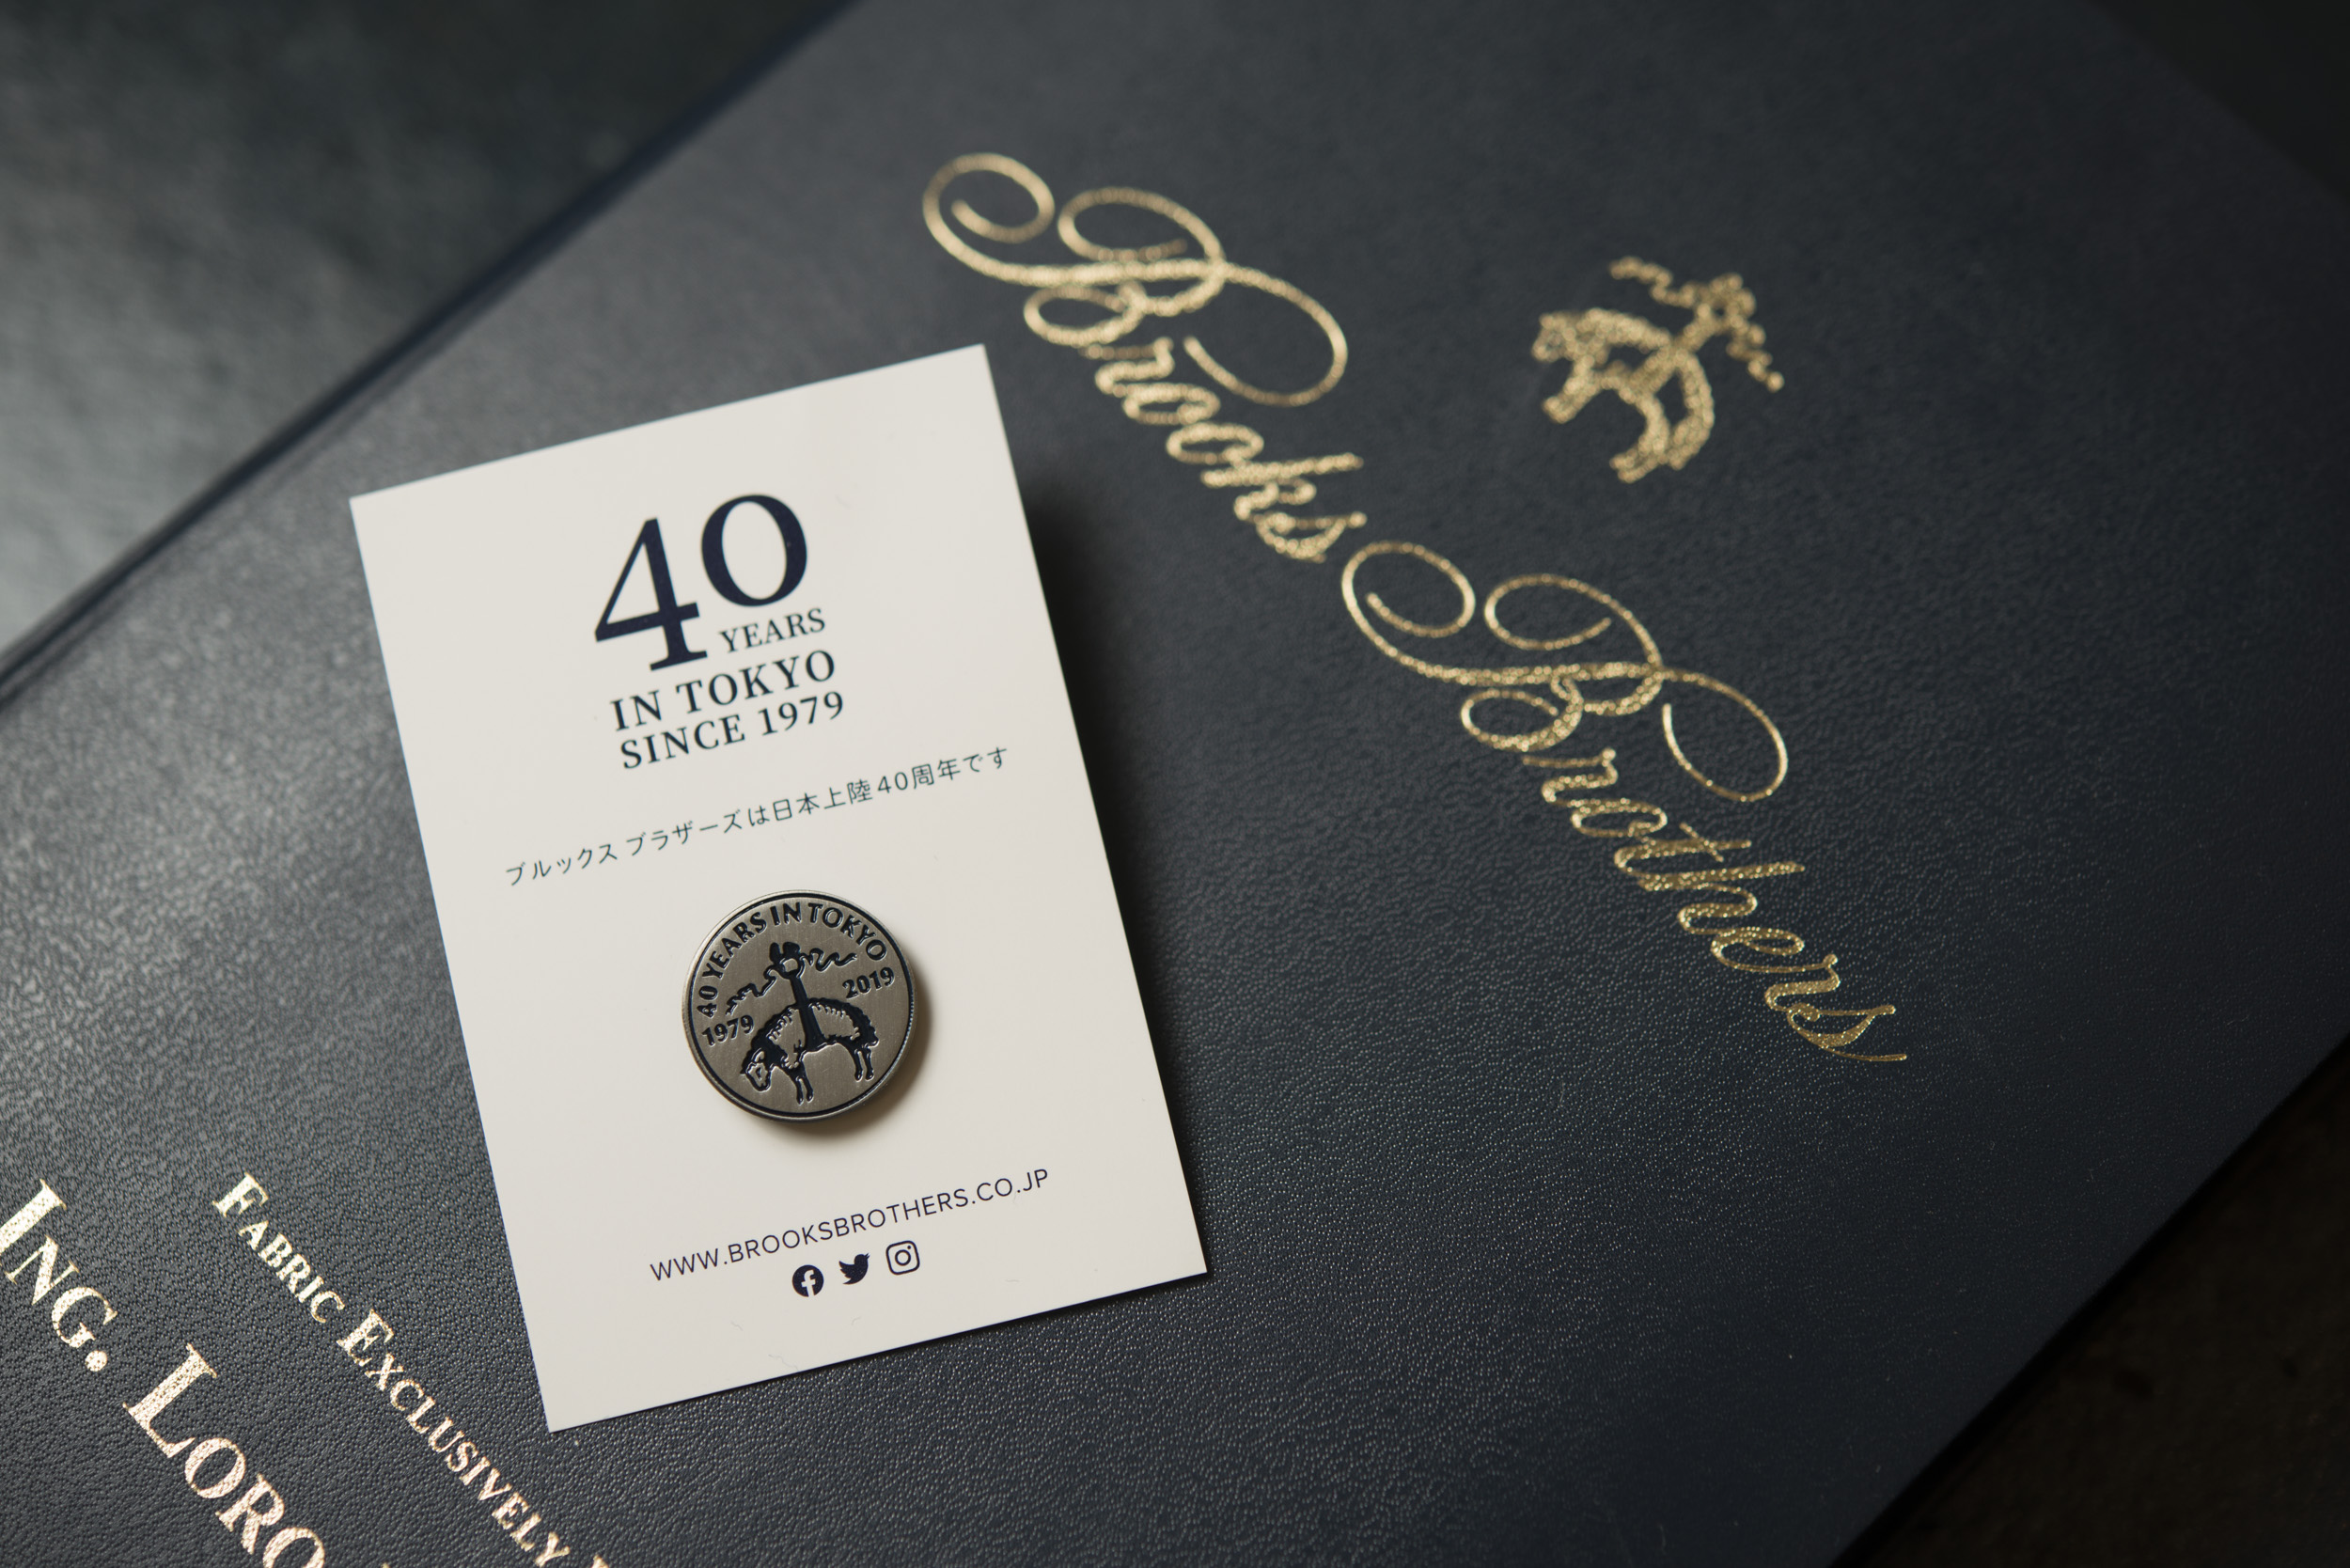 ブルックス ブラザーズの日本上陸40周年を記念したオリジナルピンバッジが貰えるチャンス！｜株式会社ブルックス ブラザーズ ジャパンのプレスリリース